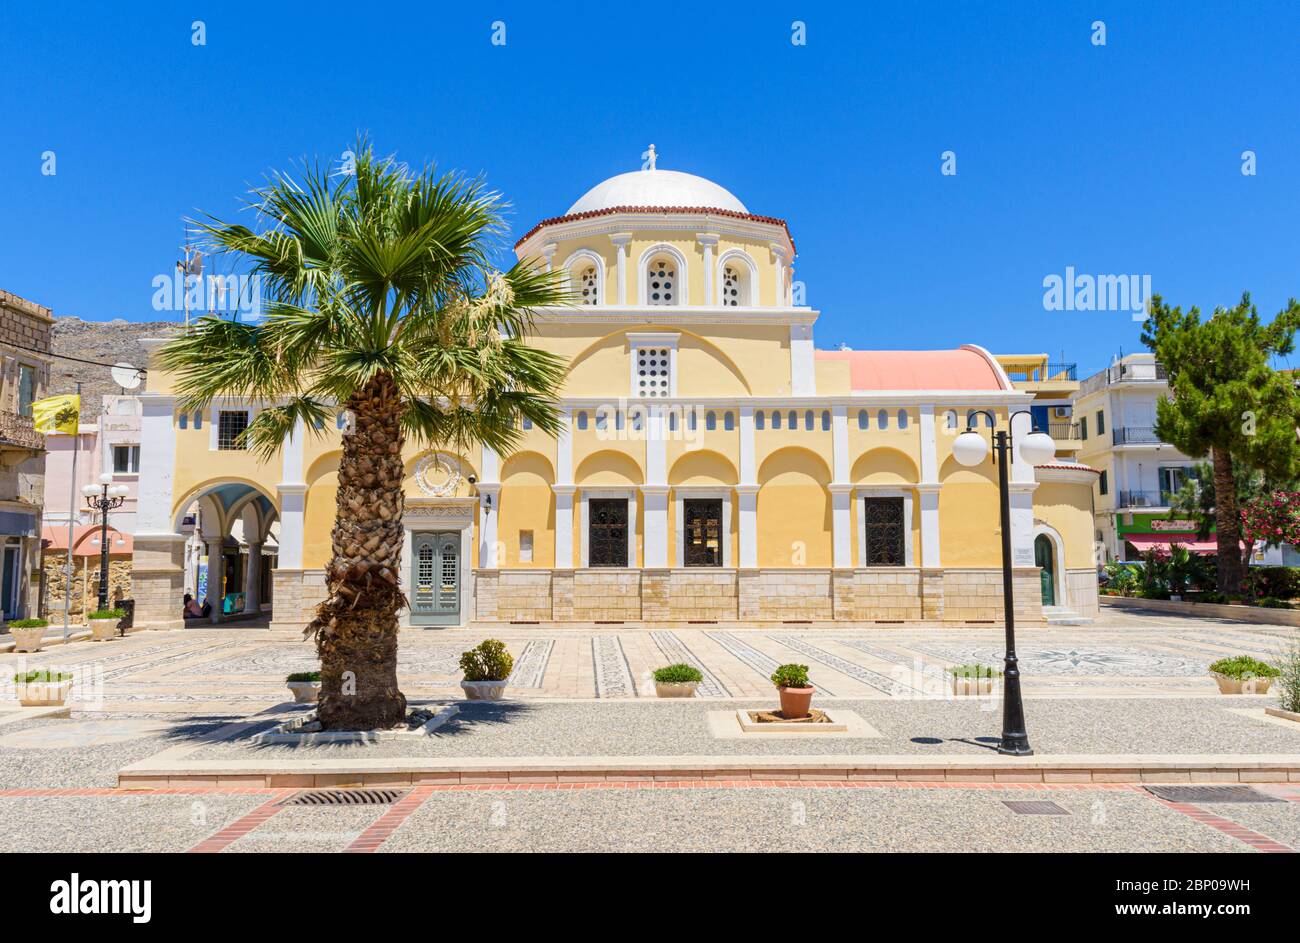 Cathédrale orthodoxe grecque de la Transfiguration de Jésus-Christ, ville de Pothia, Kalymnos, Dodécanèse, Grèce Banque D'Images